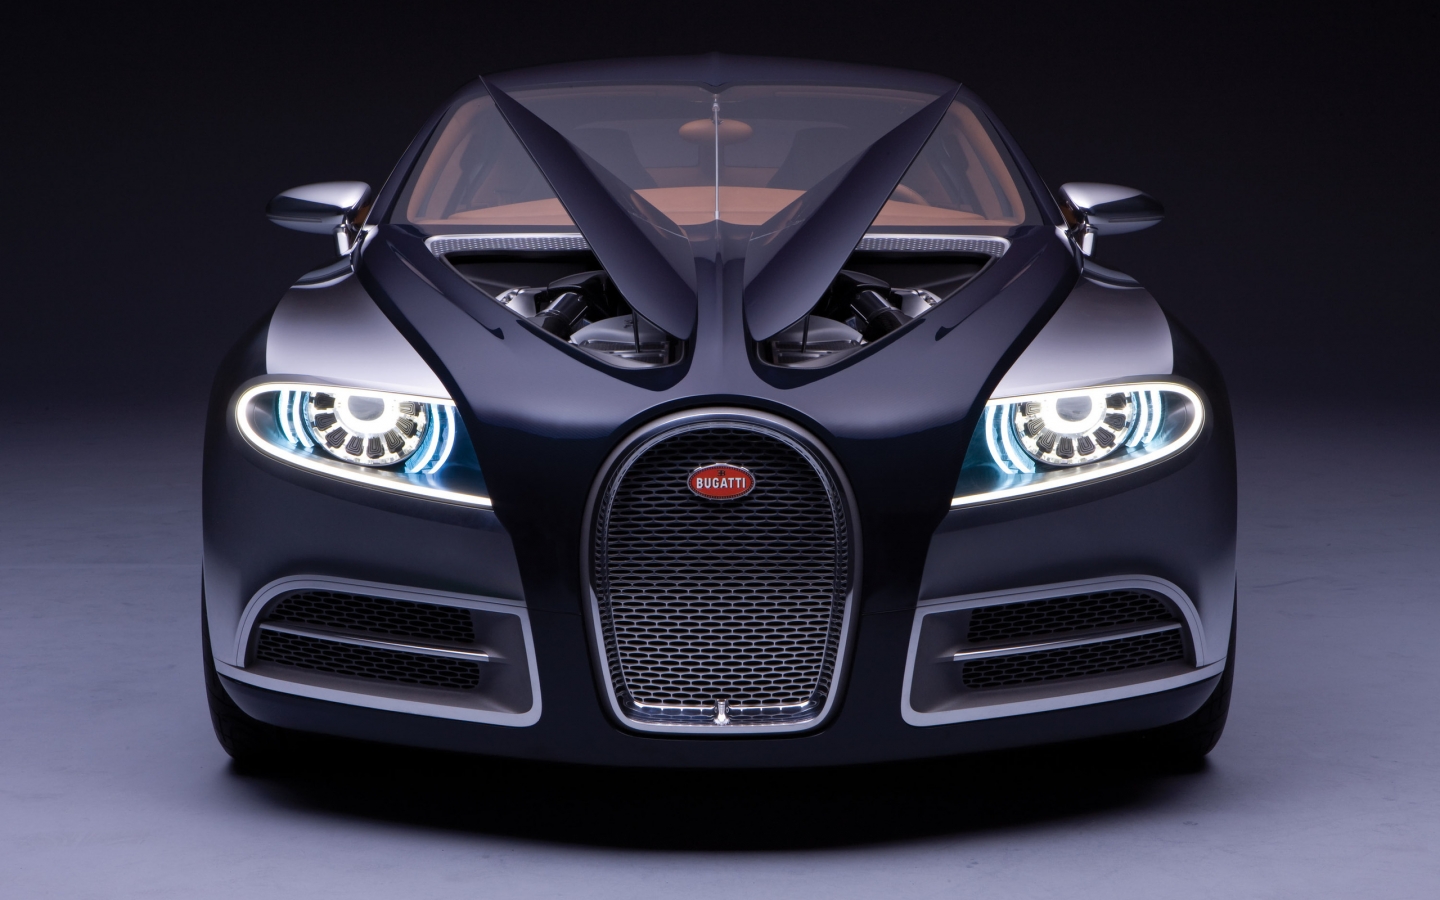 Bugatti for 1440 x 900 widescreen resolution